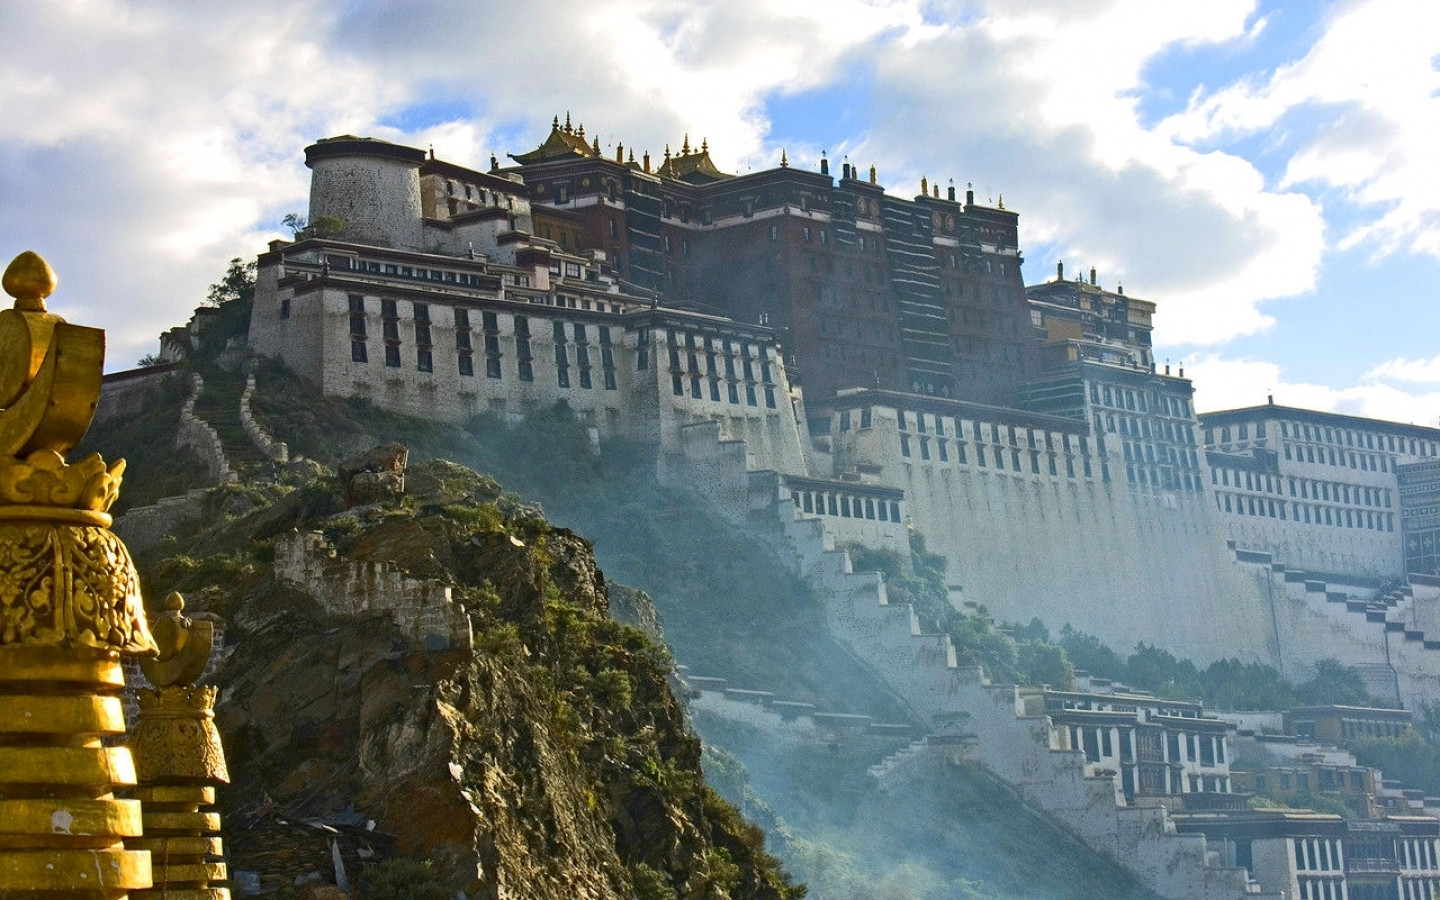 Potala Palace, winter palace of the Dalai Lama